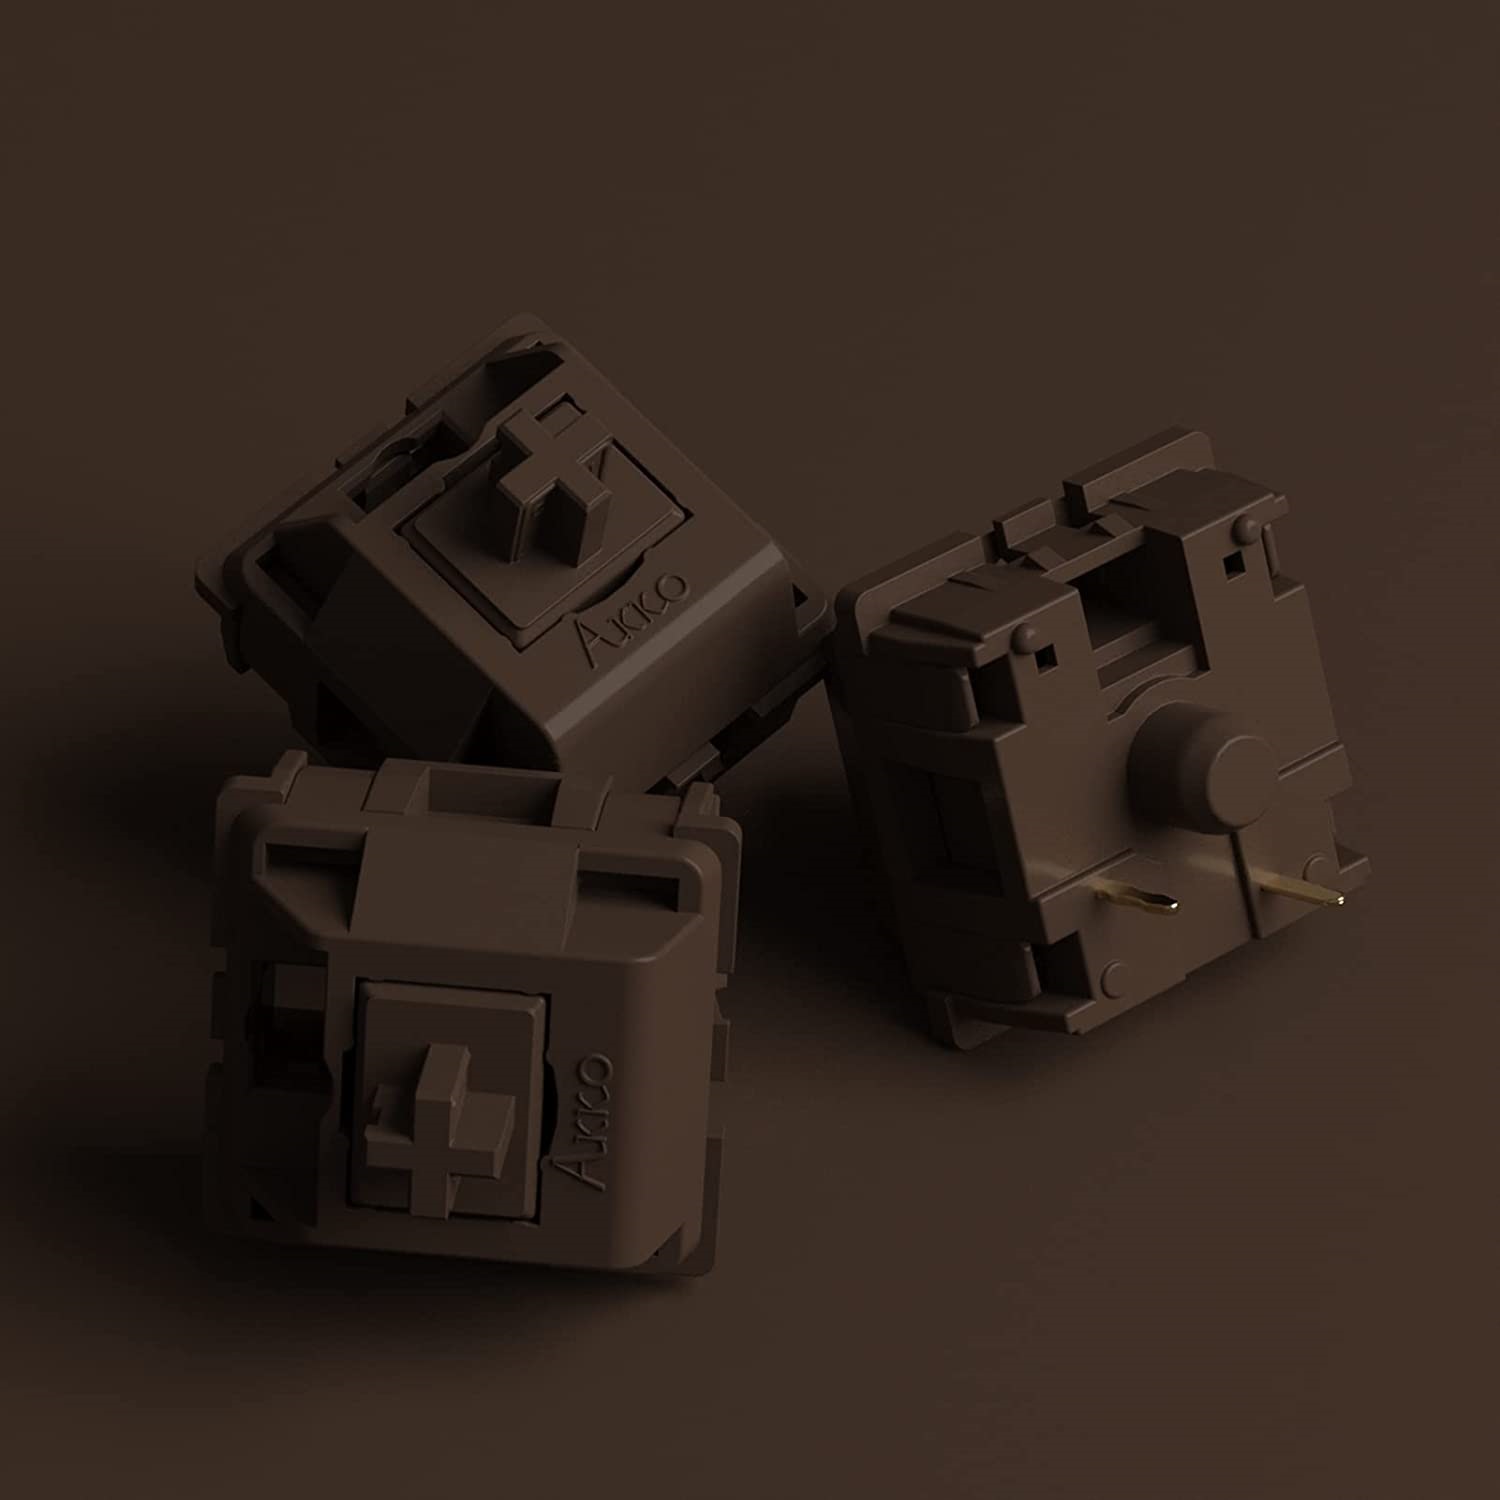 [Bộ 45 Switch/Pack] Công tắc thay thế bàn phím cơ AKKO CS Switch - POM (Pink/Brown/Silver)_Mới, hàng chính hãng